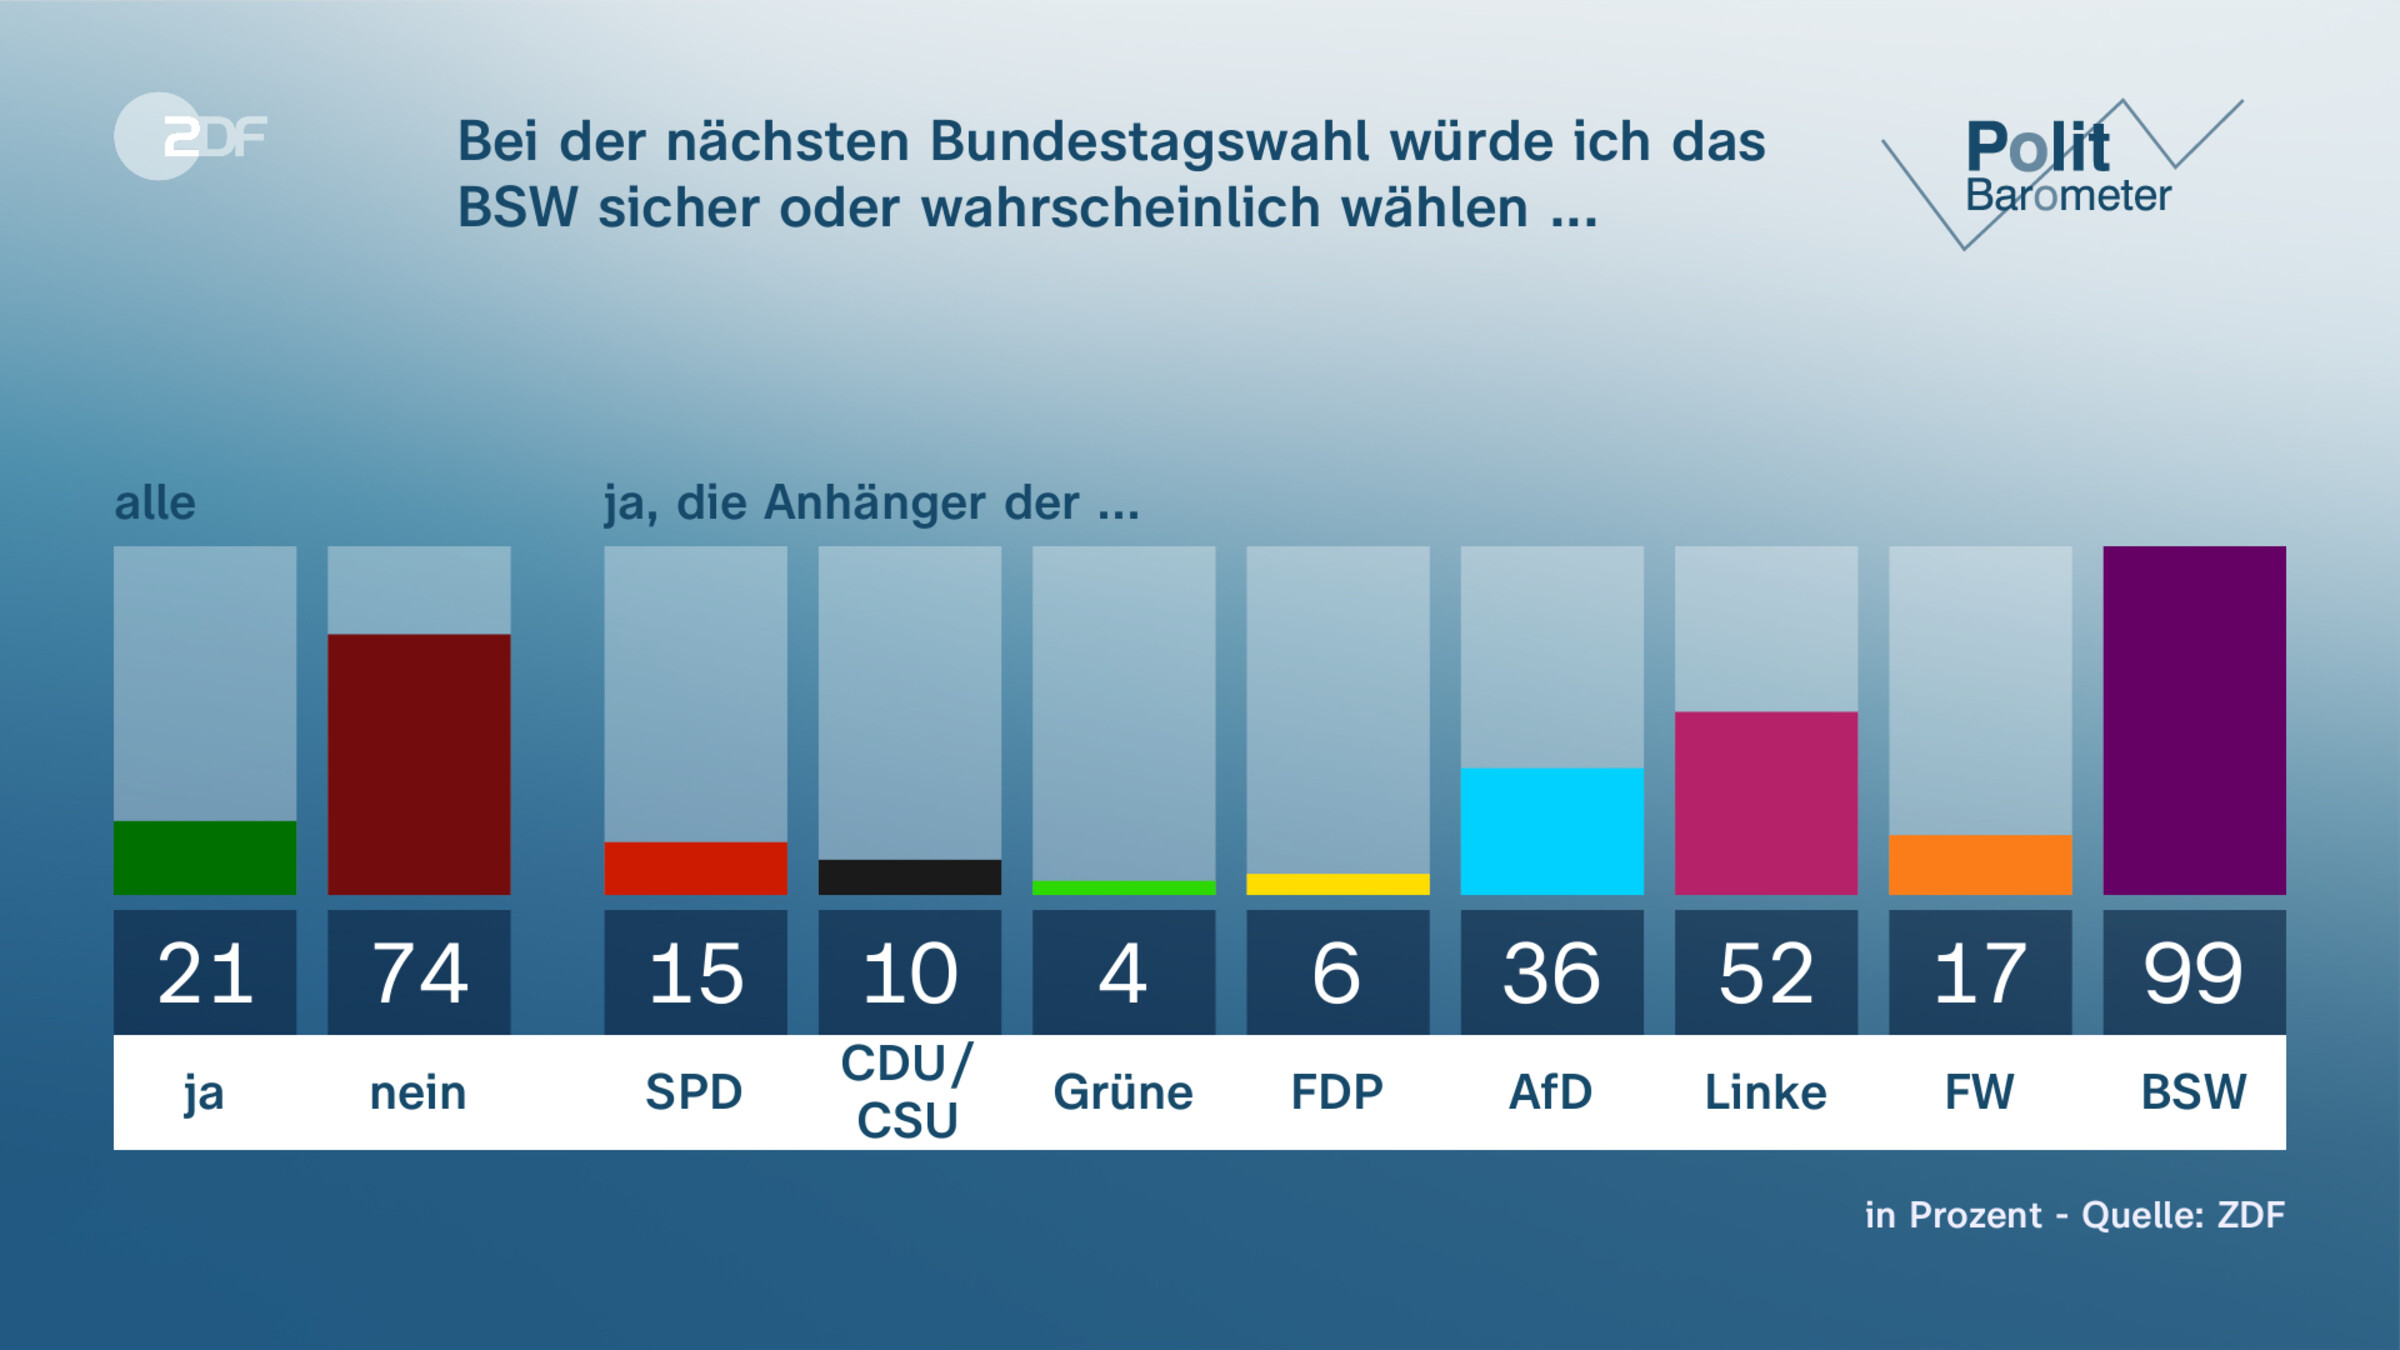 Bei der nächsten Bundestagswahl würde ich das BSW sicher oder wahrscheinlich wählen ...